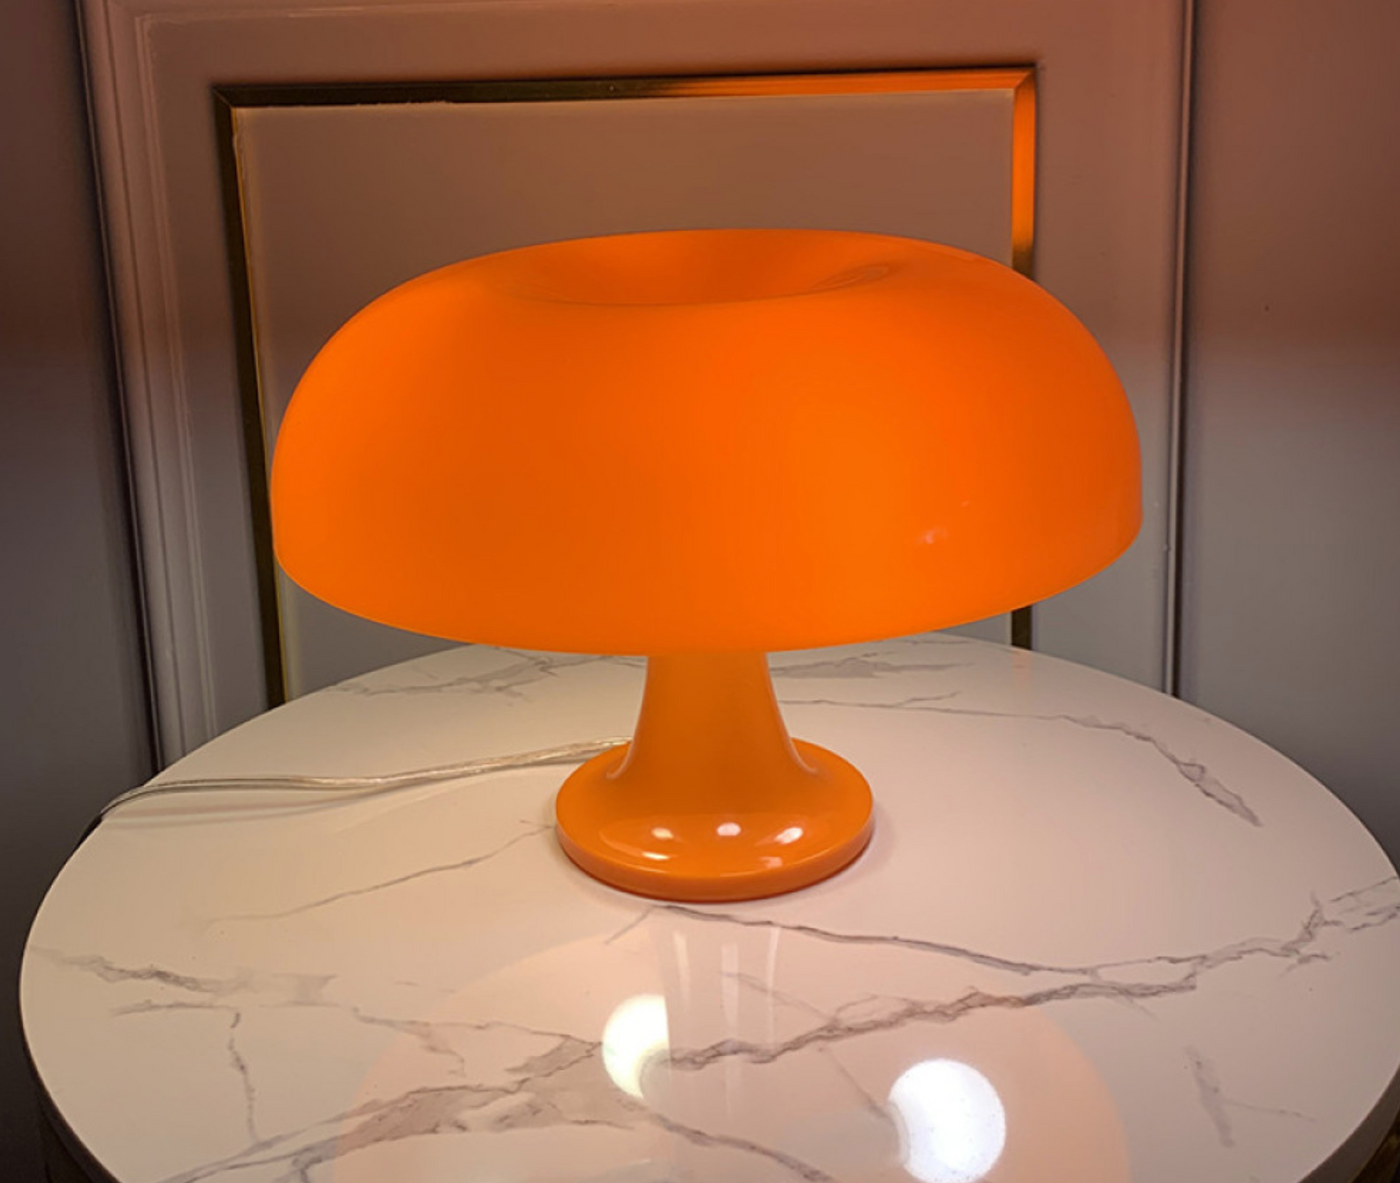 Lampe Vintage Design Italien Orange – Collection Vintage Shop